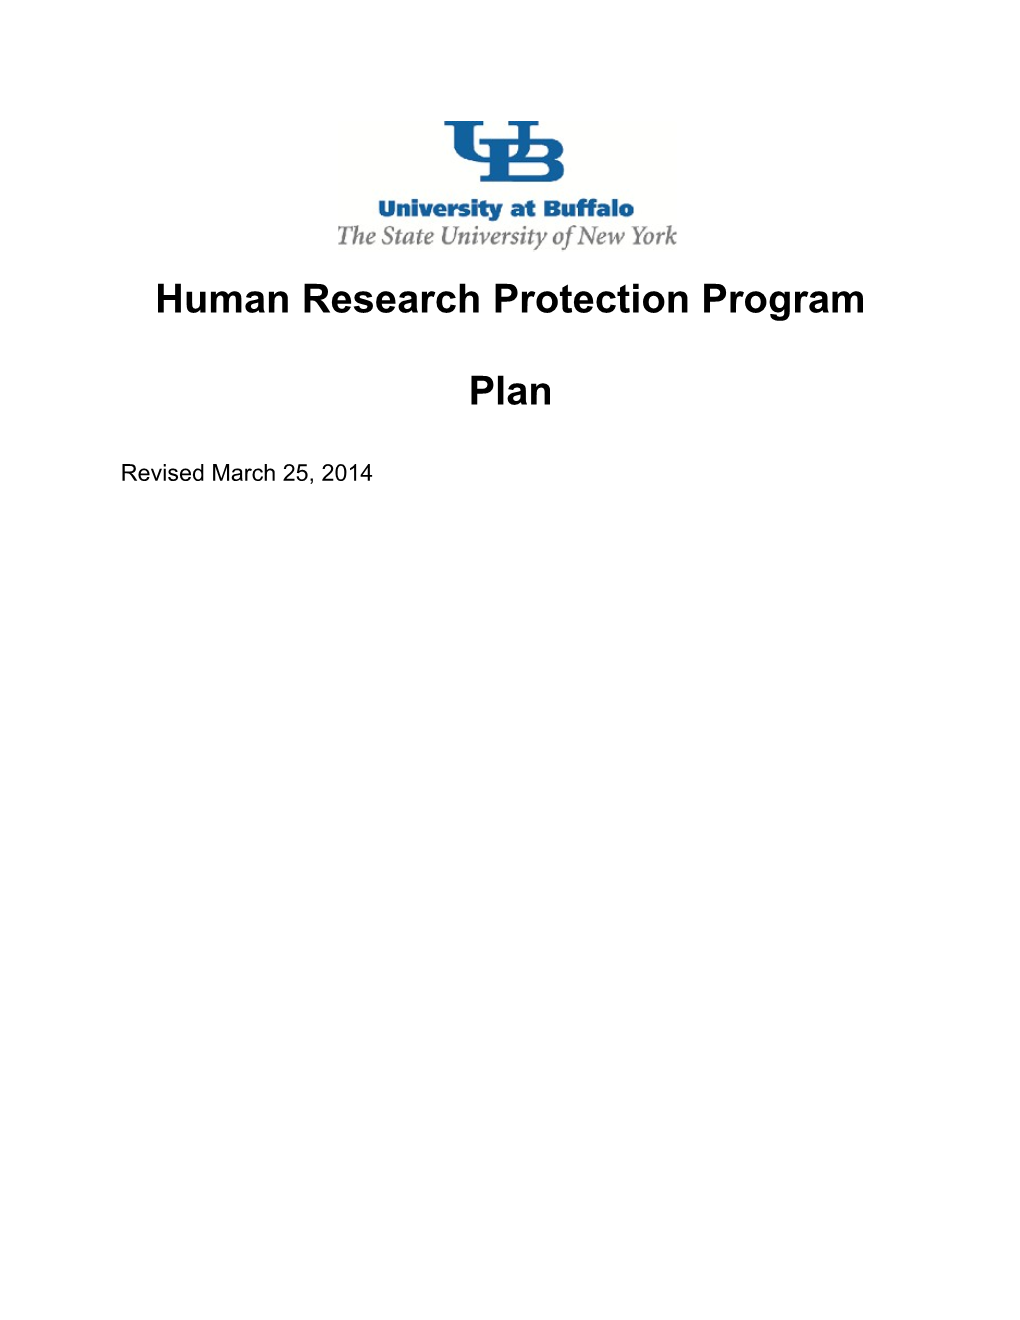 Hrp-101 - Human Research Protection Program Plan